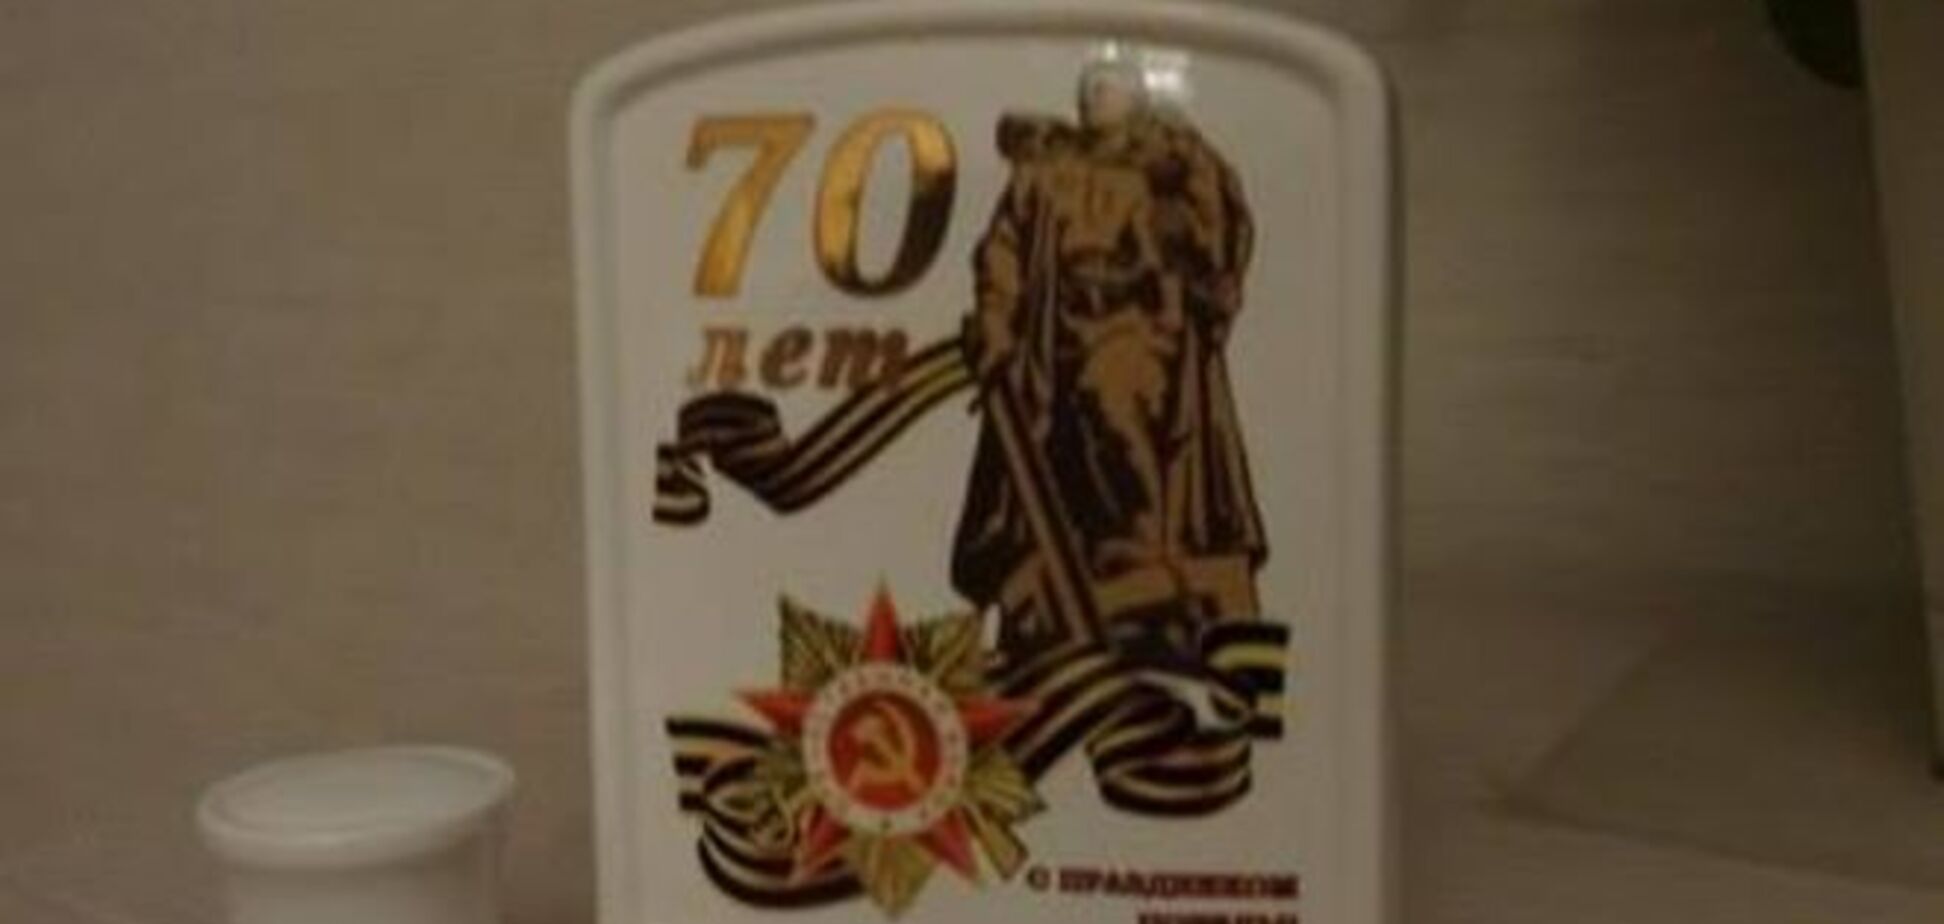 'Дедывоевали!': в России ветерану ко Дню Победы подарили бутылку без водки - фотофакт